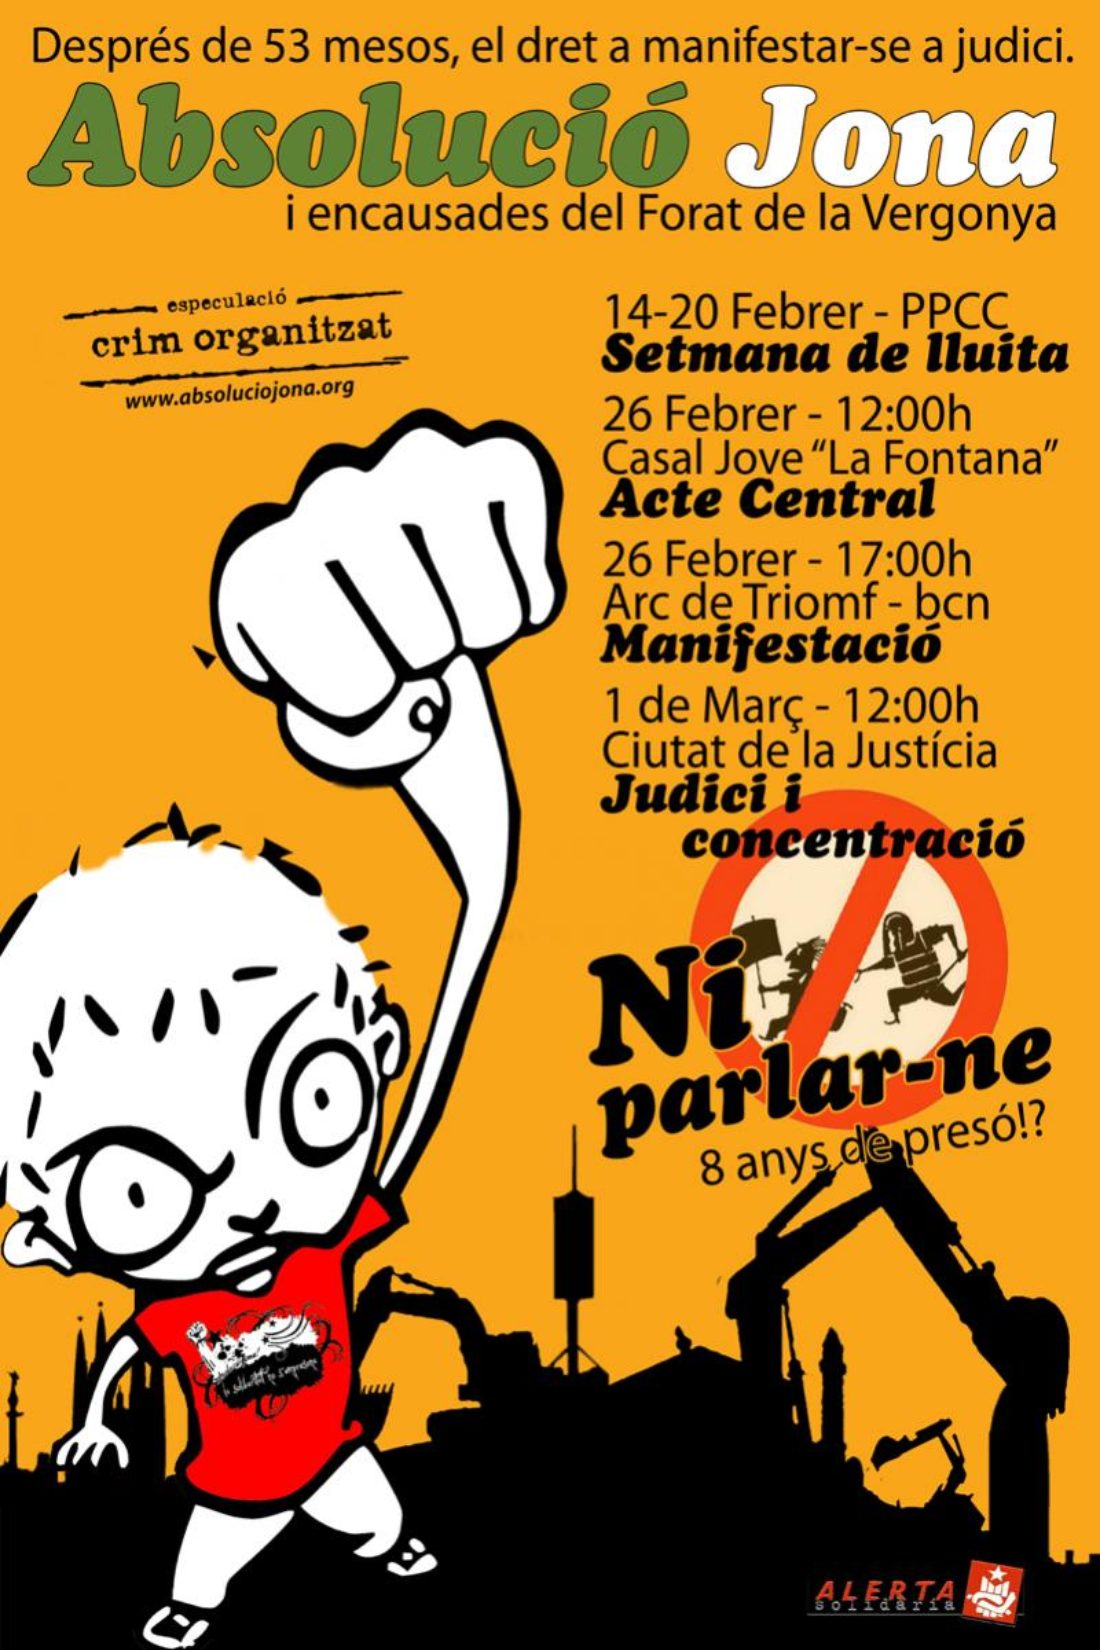 Manifestación en Barcelona por la absolución de El Jona